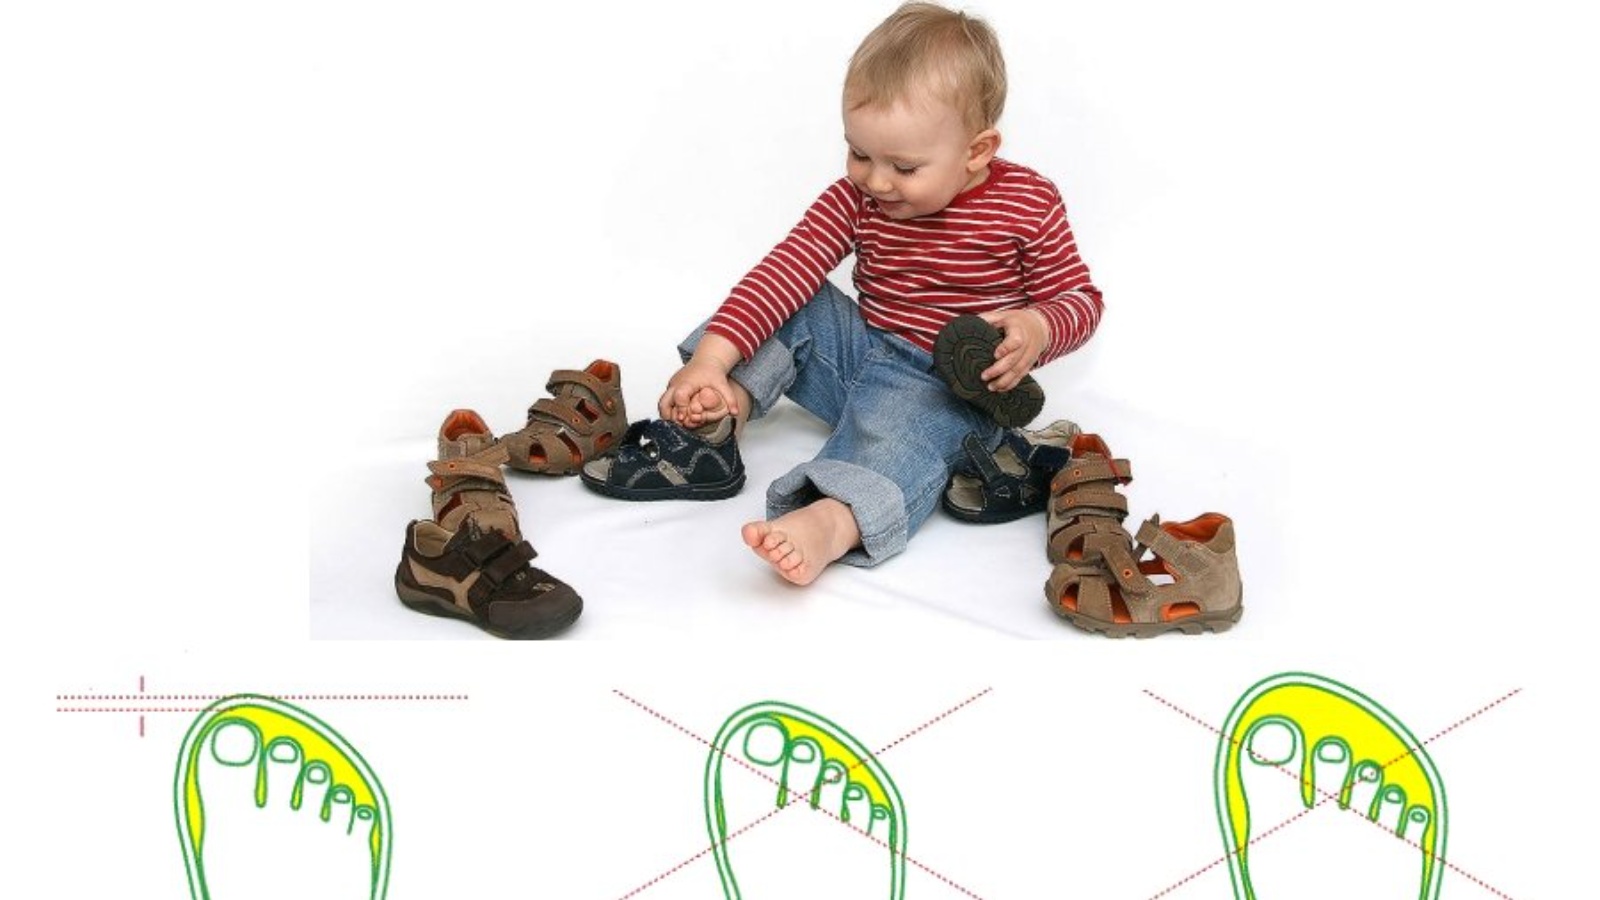 Обувь 6 месяцев. Как правильно выбрать обувь ребенку по размеру. Как правильно подобрать размер обуви ребенку в год. Запас обуви для ребенка. Правильная первая обувь для детей 1 года.